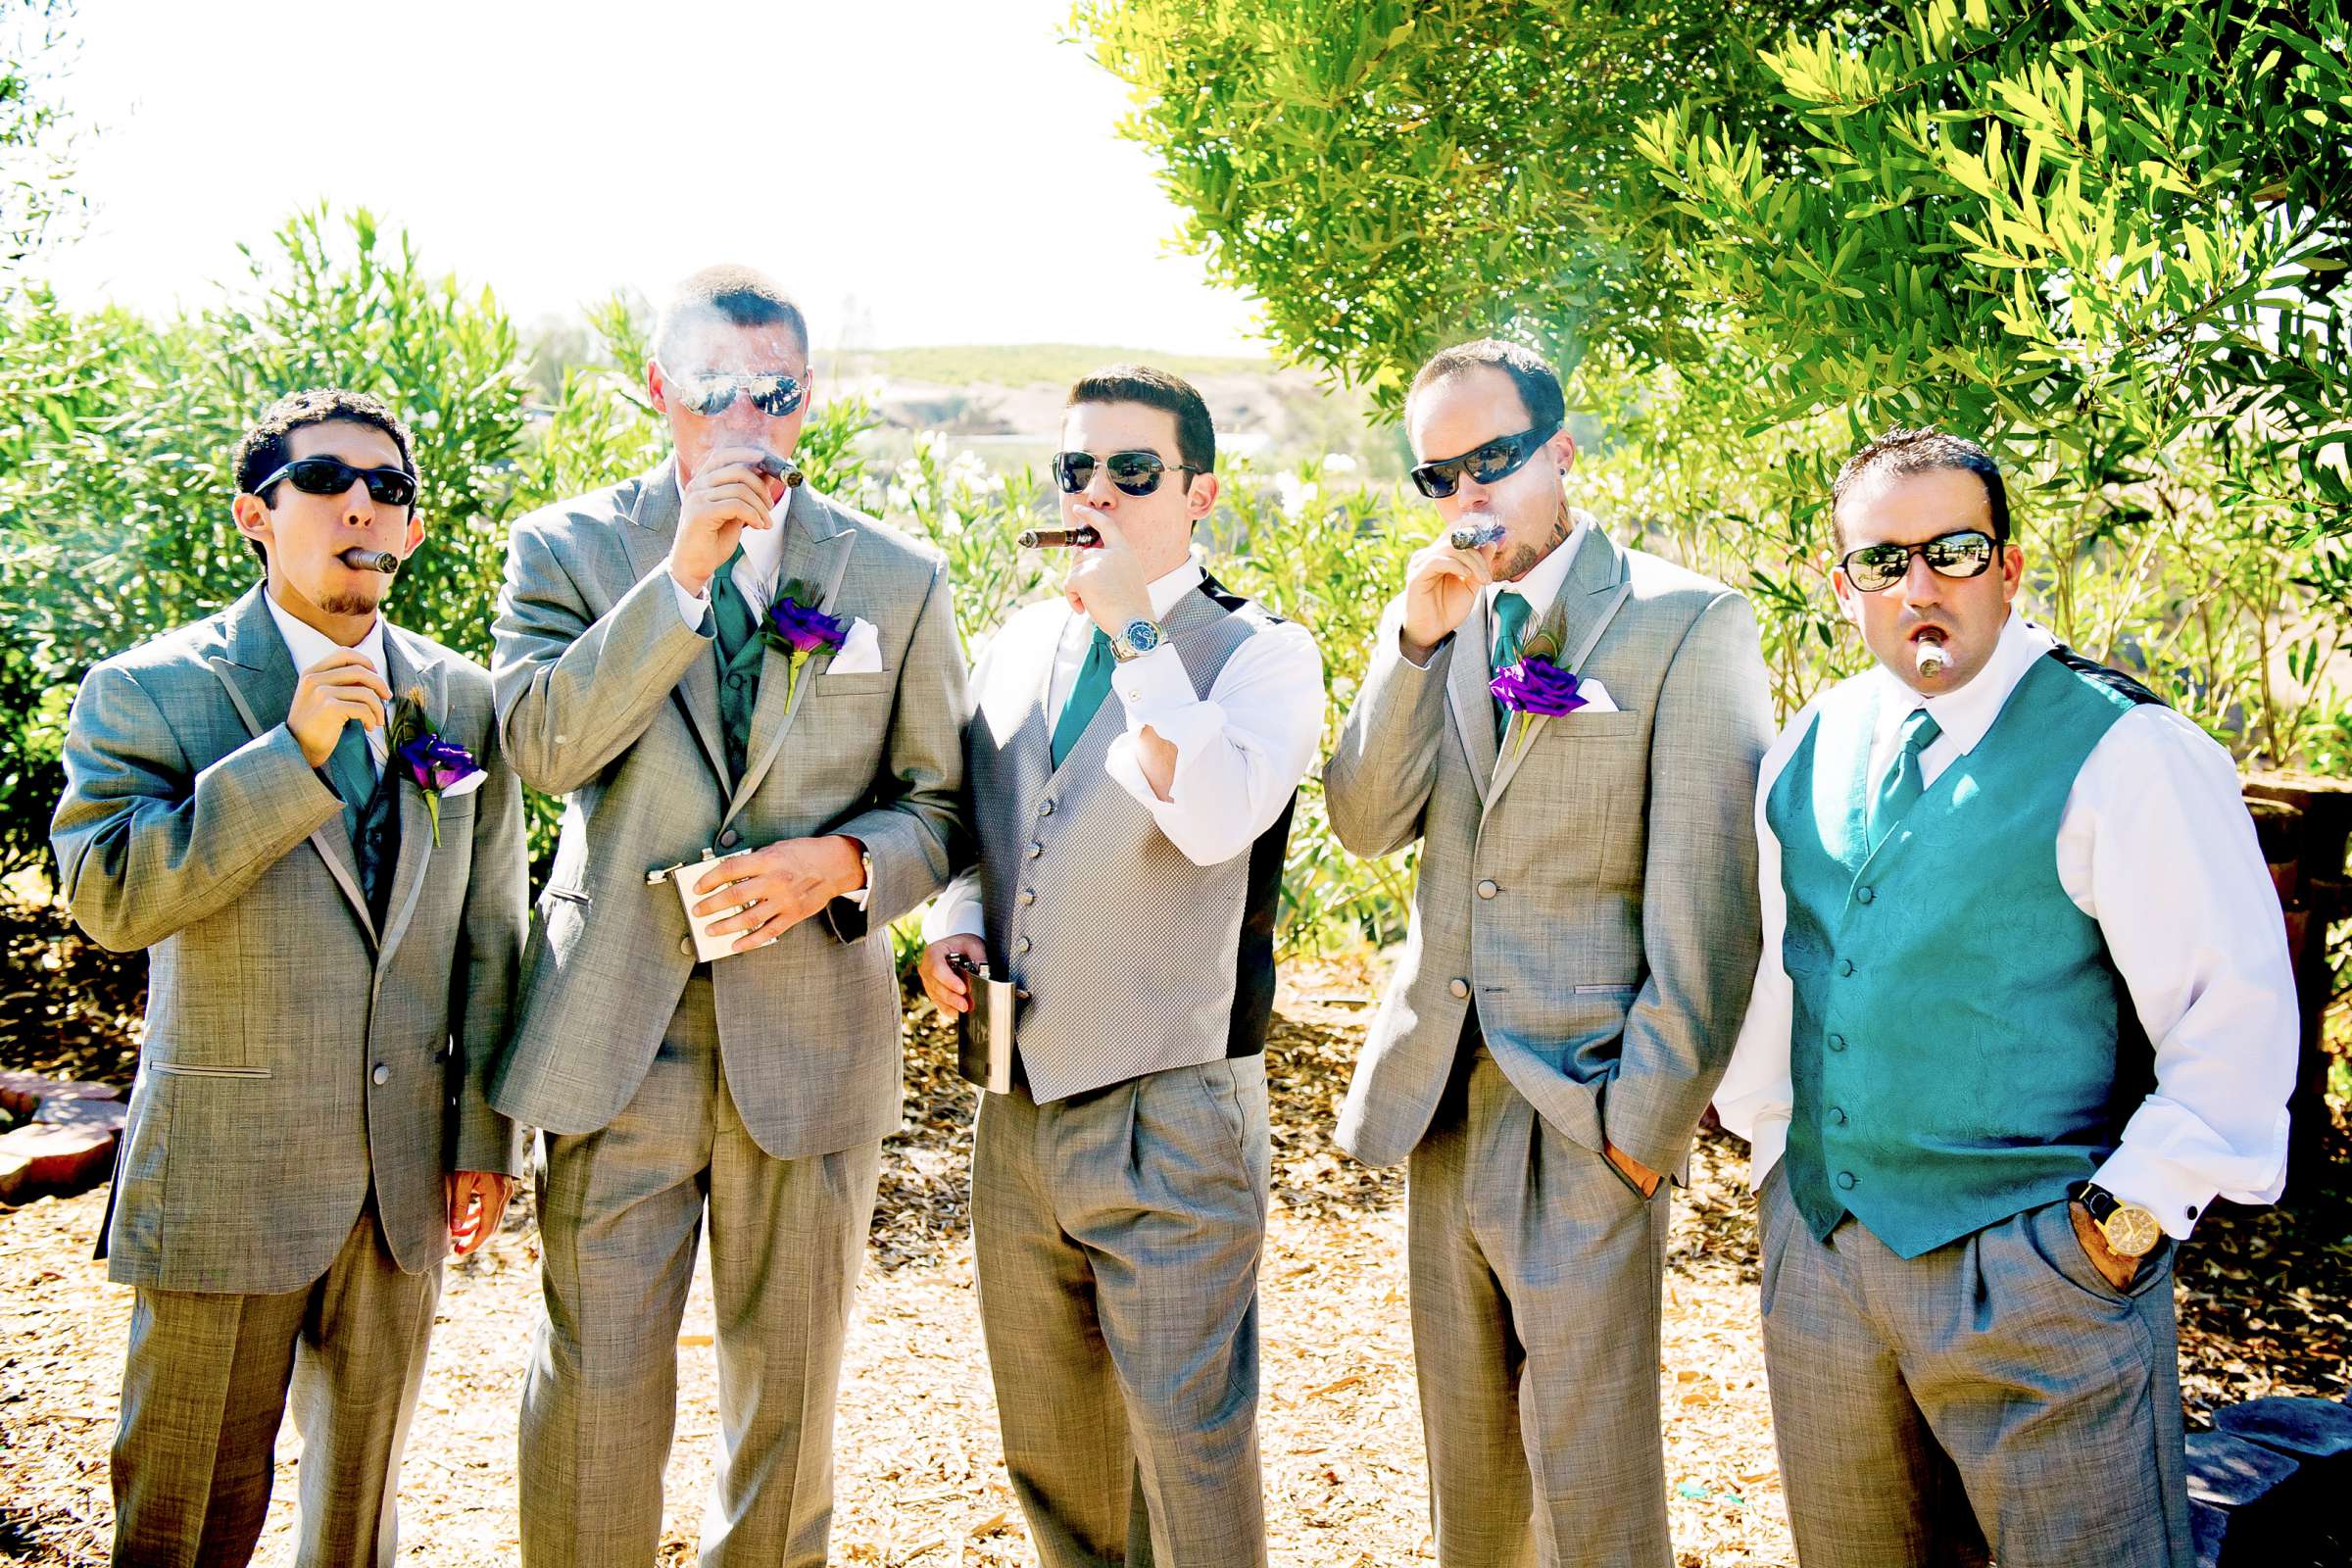 Mount Palomar Winery Wedding, Brandi and Jason Wedding Photo #321635 by True Photography